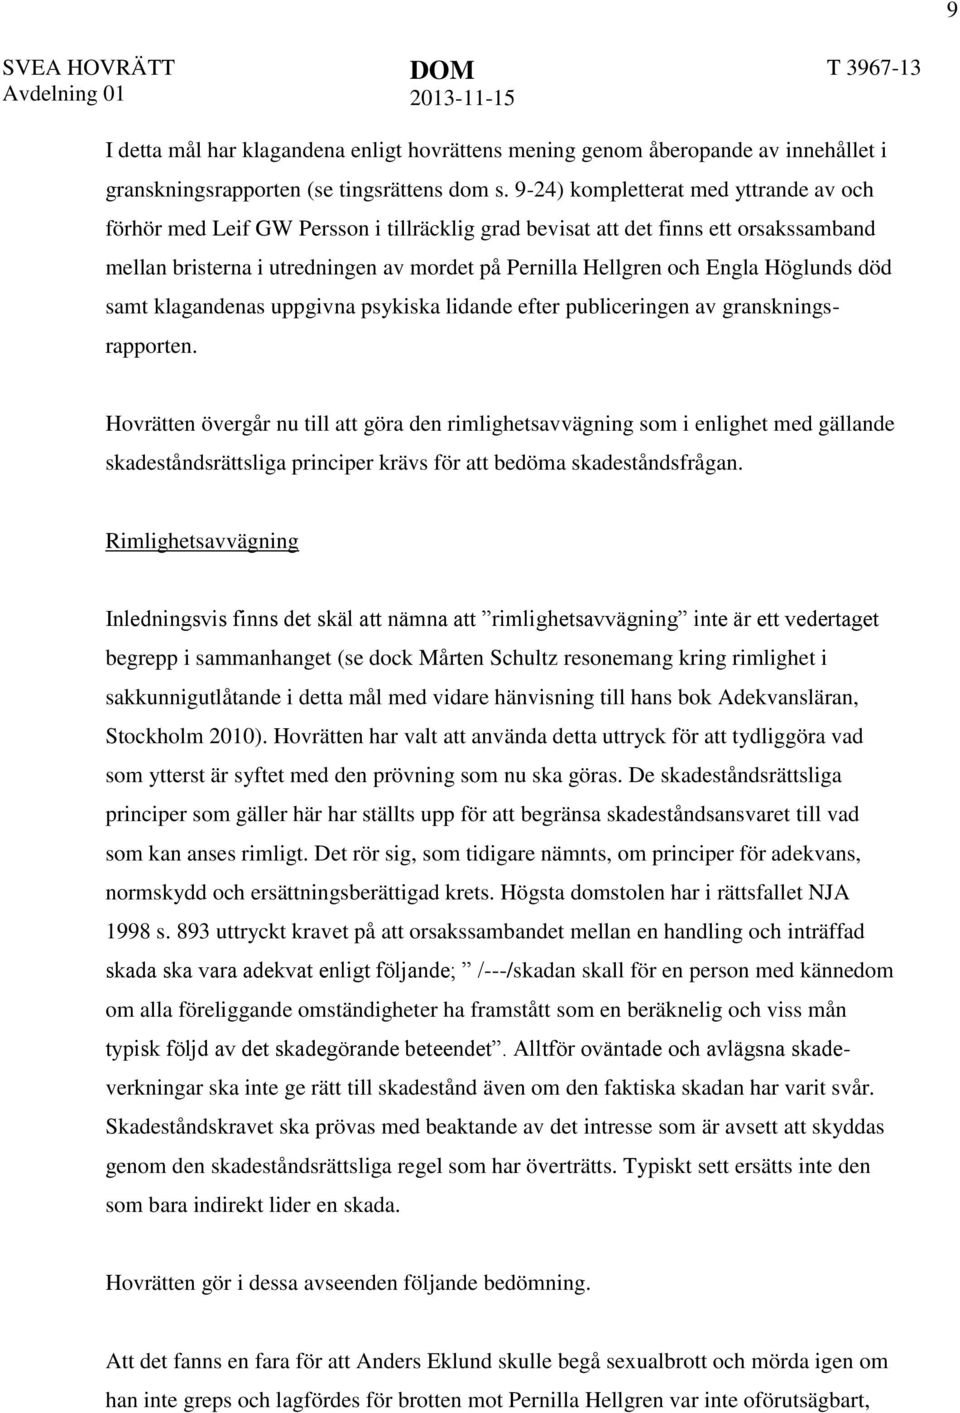 Höglunds död samt klagandenas uppgivna psykiska lidande efter publiceringen av granskningsrapporten.